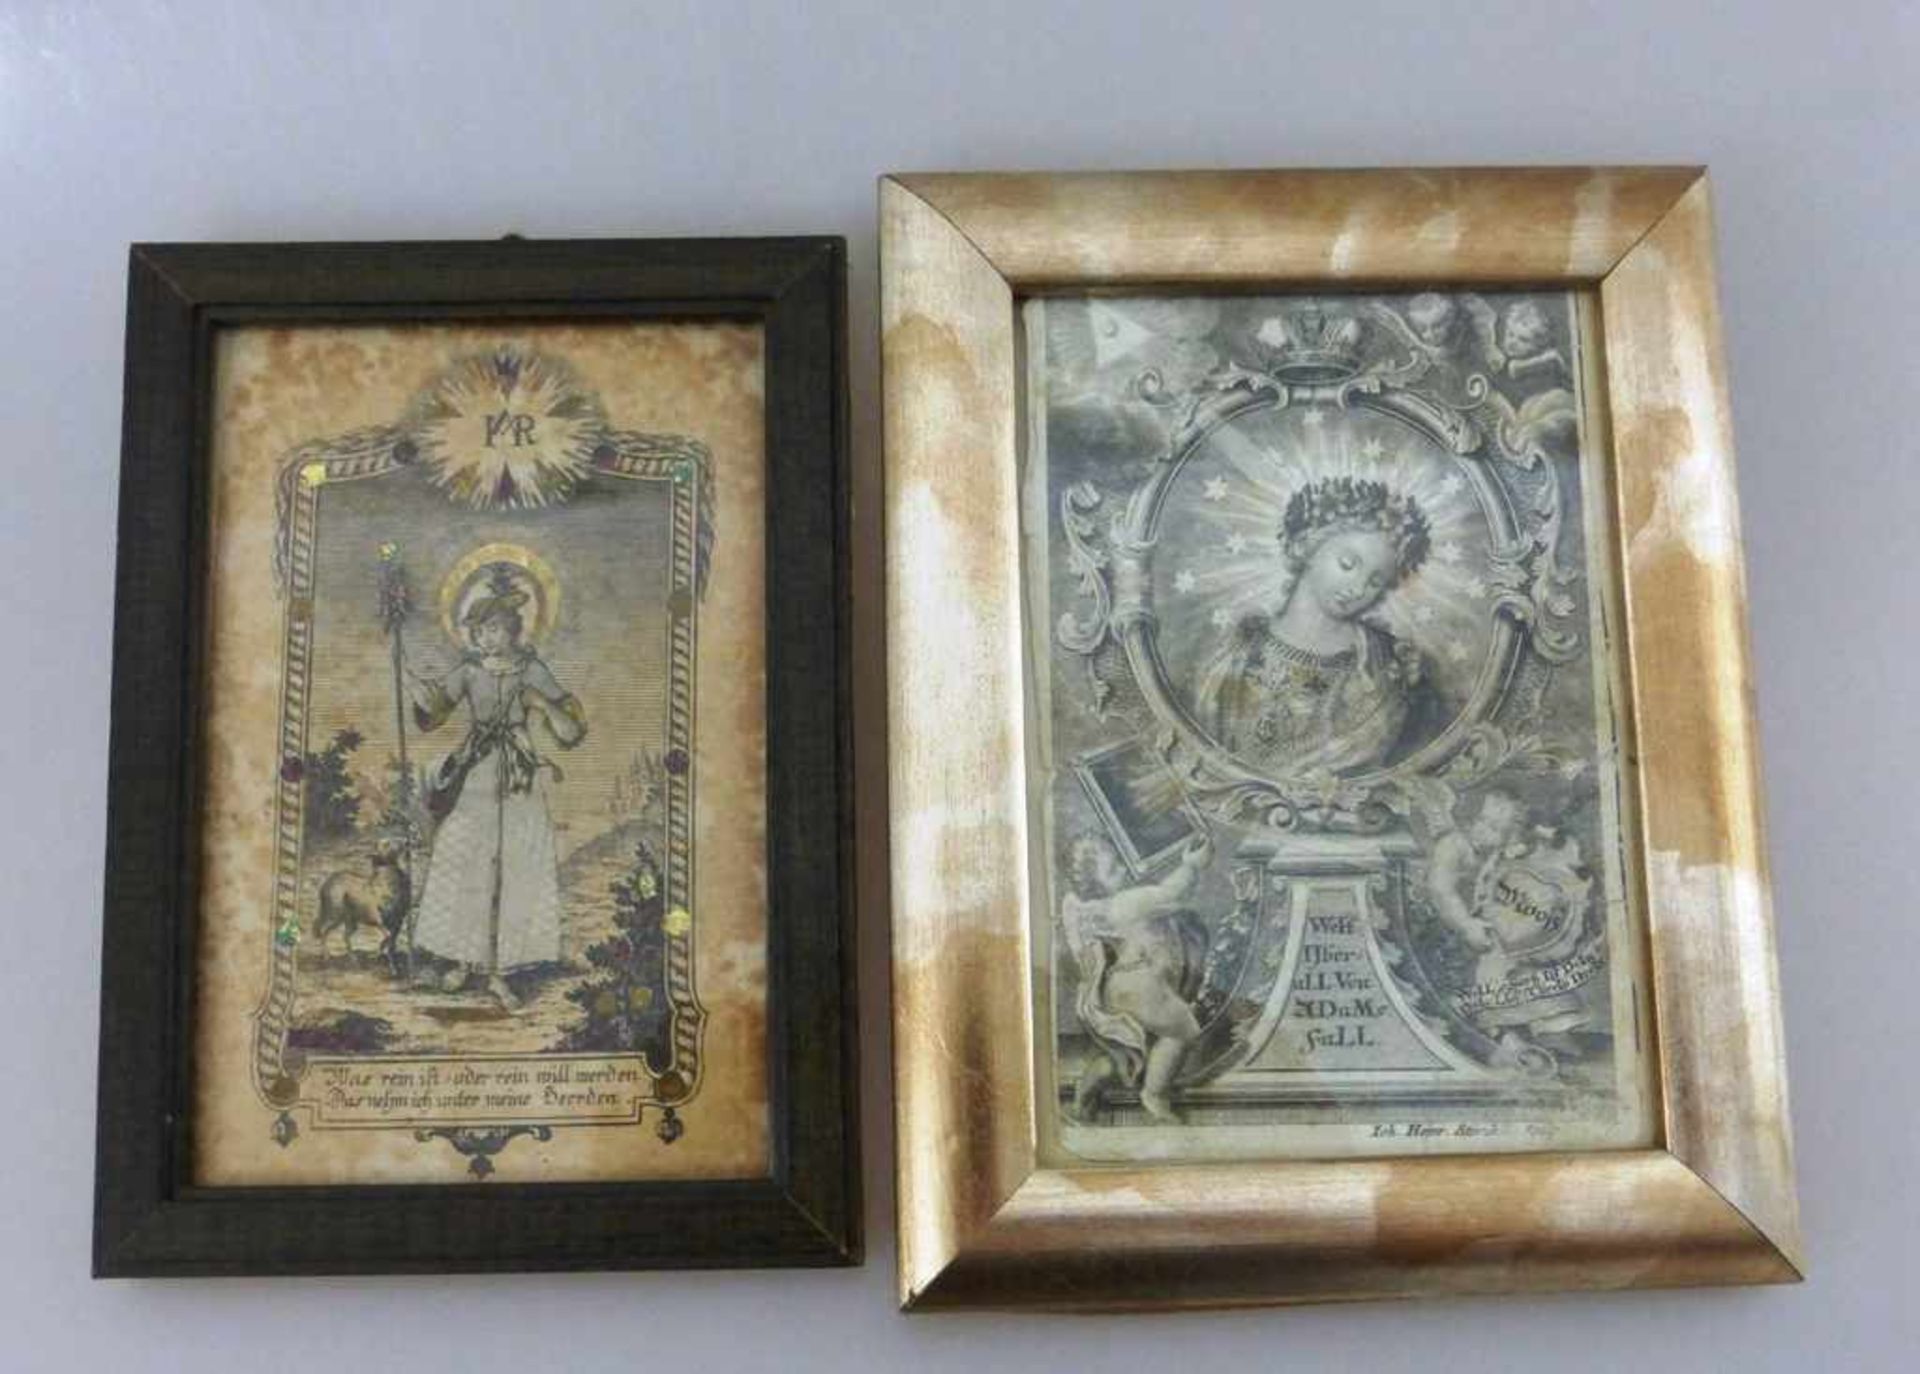 2 religiöse Kupferstiche, 18.Jh., "Der gute Hirte" und "Hl. Maria", i.R. je ca. 17cm x 12cm